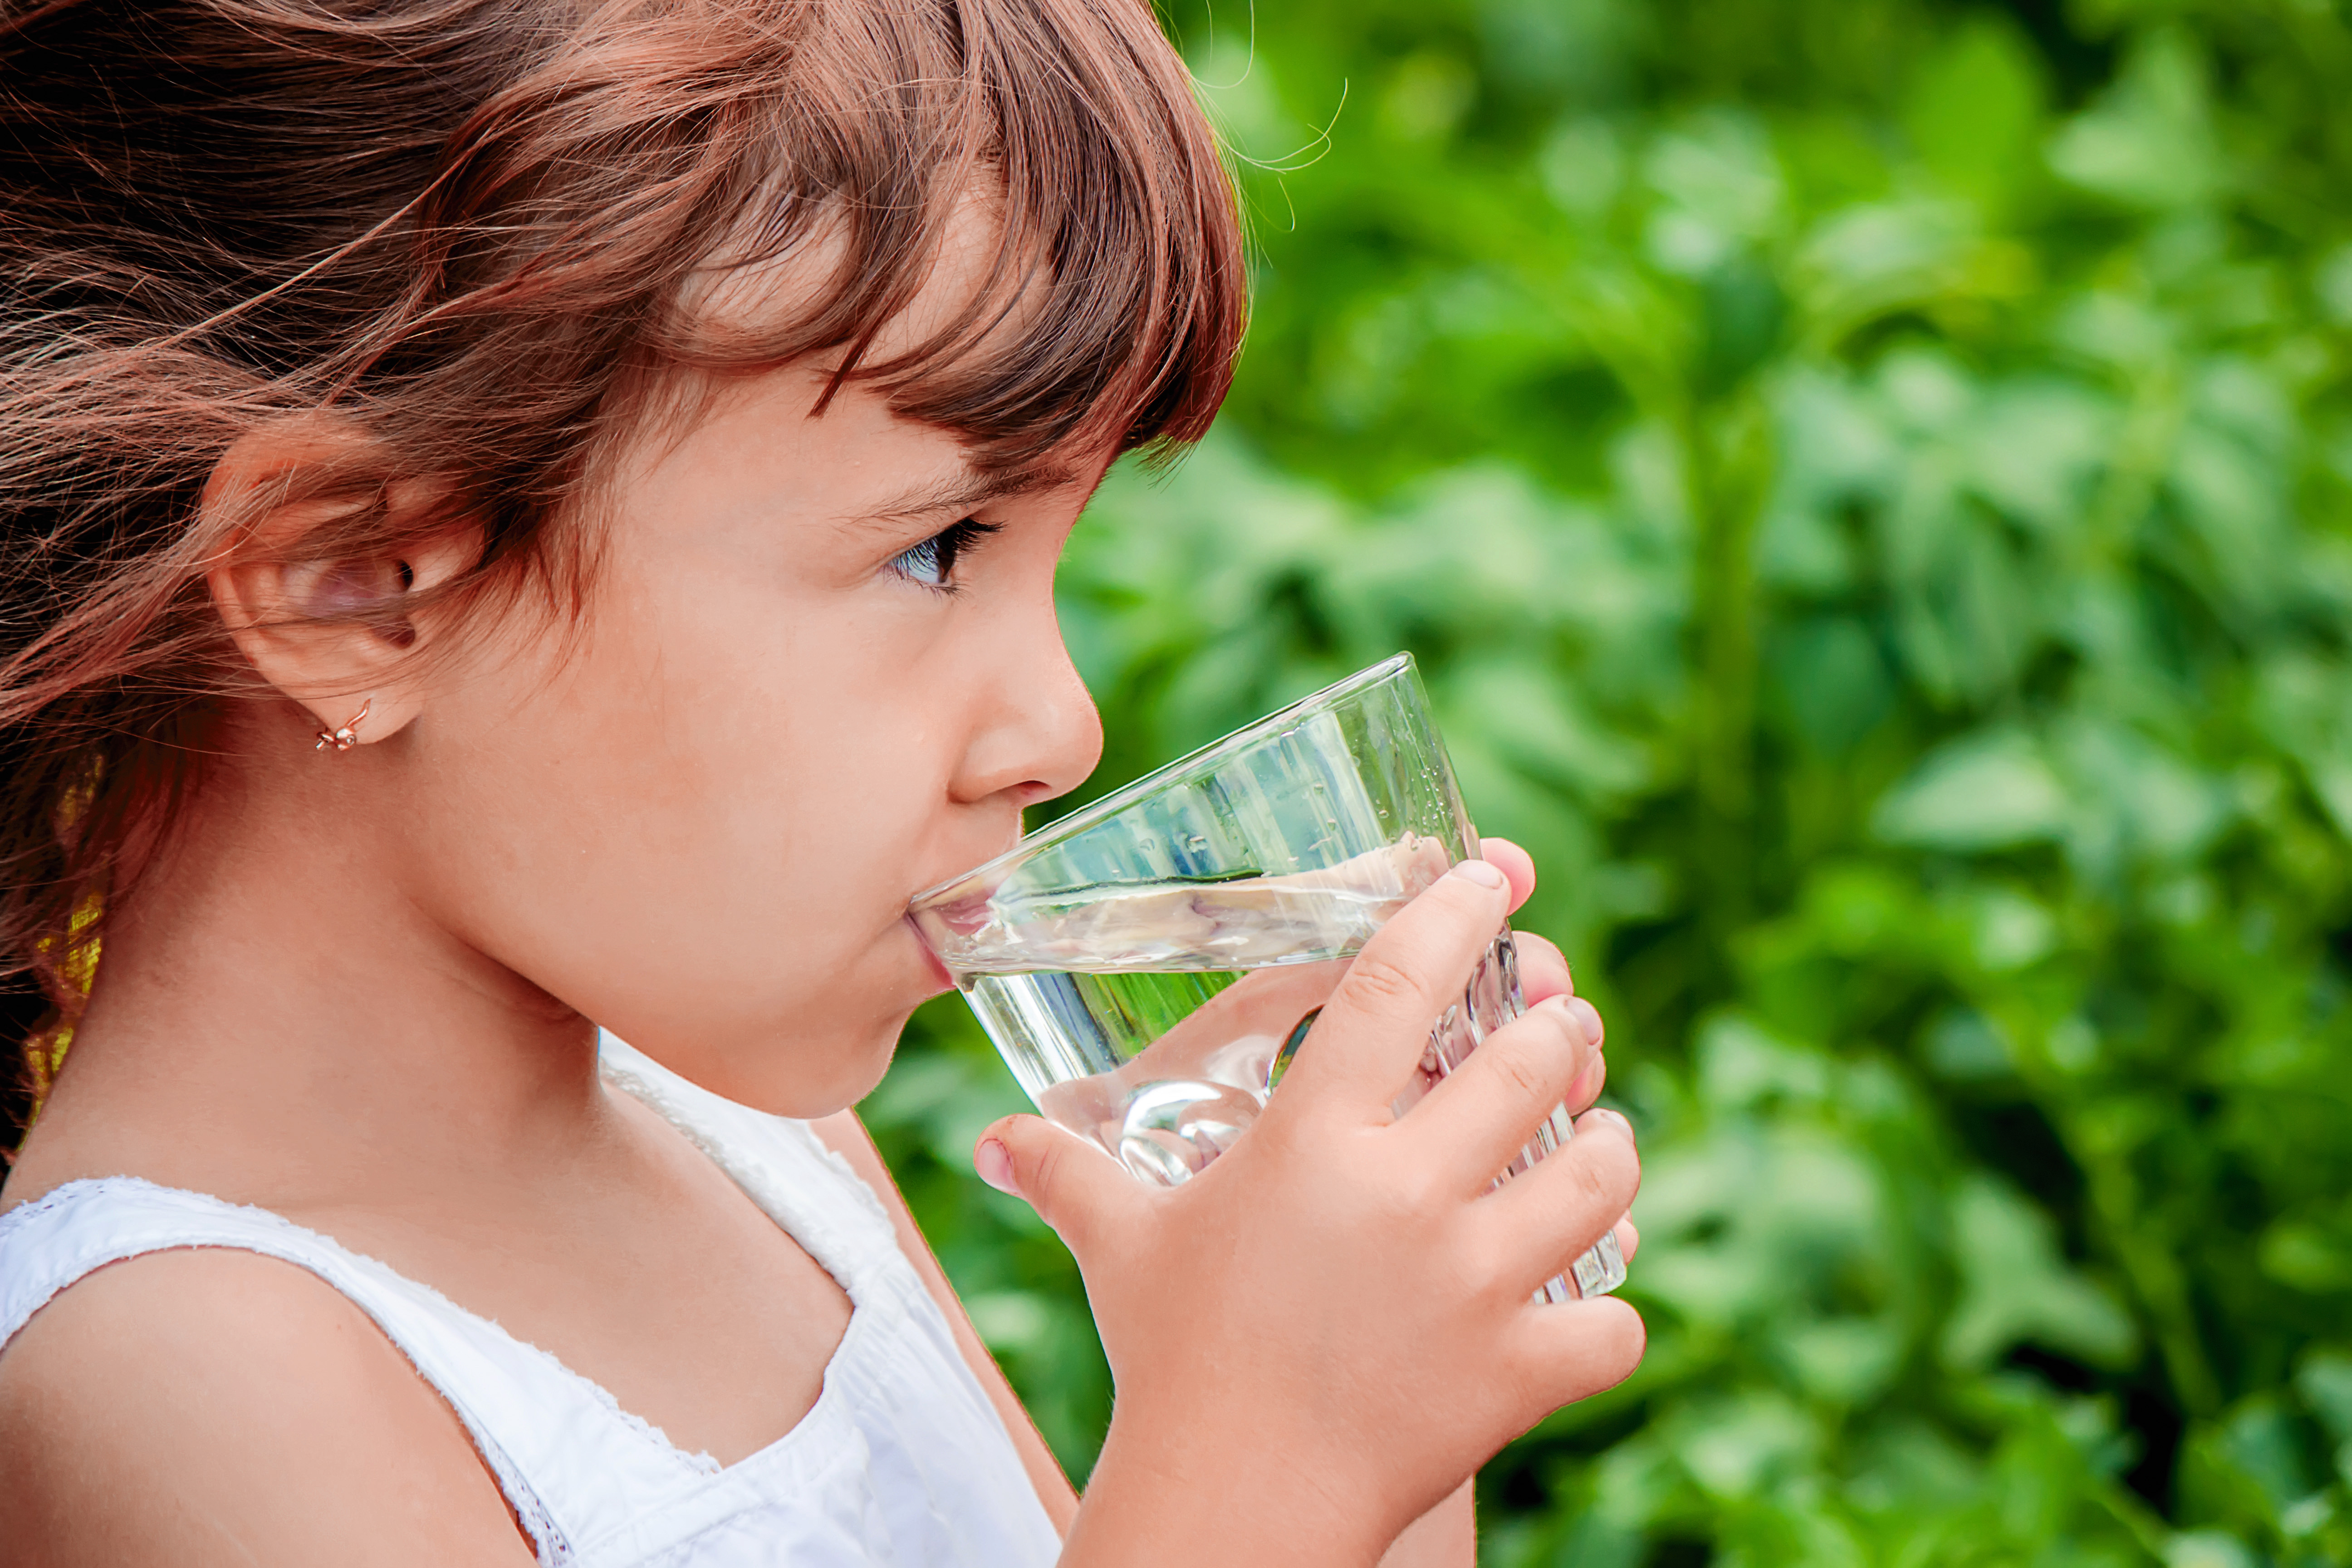 Laba hidratācija uzlabo bērnu garastāvokli, atmiņu un uzmanību.